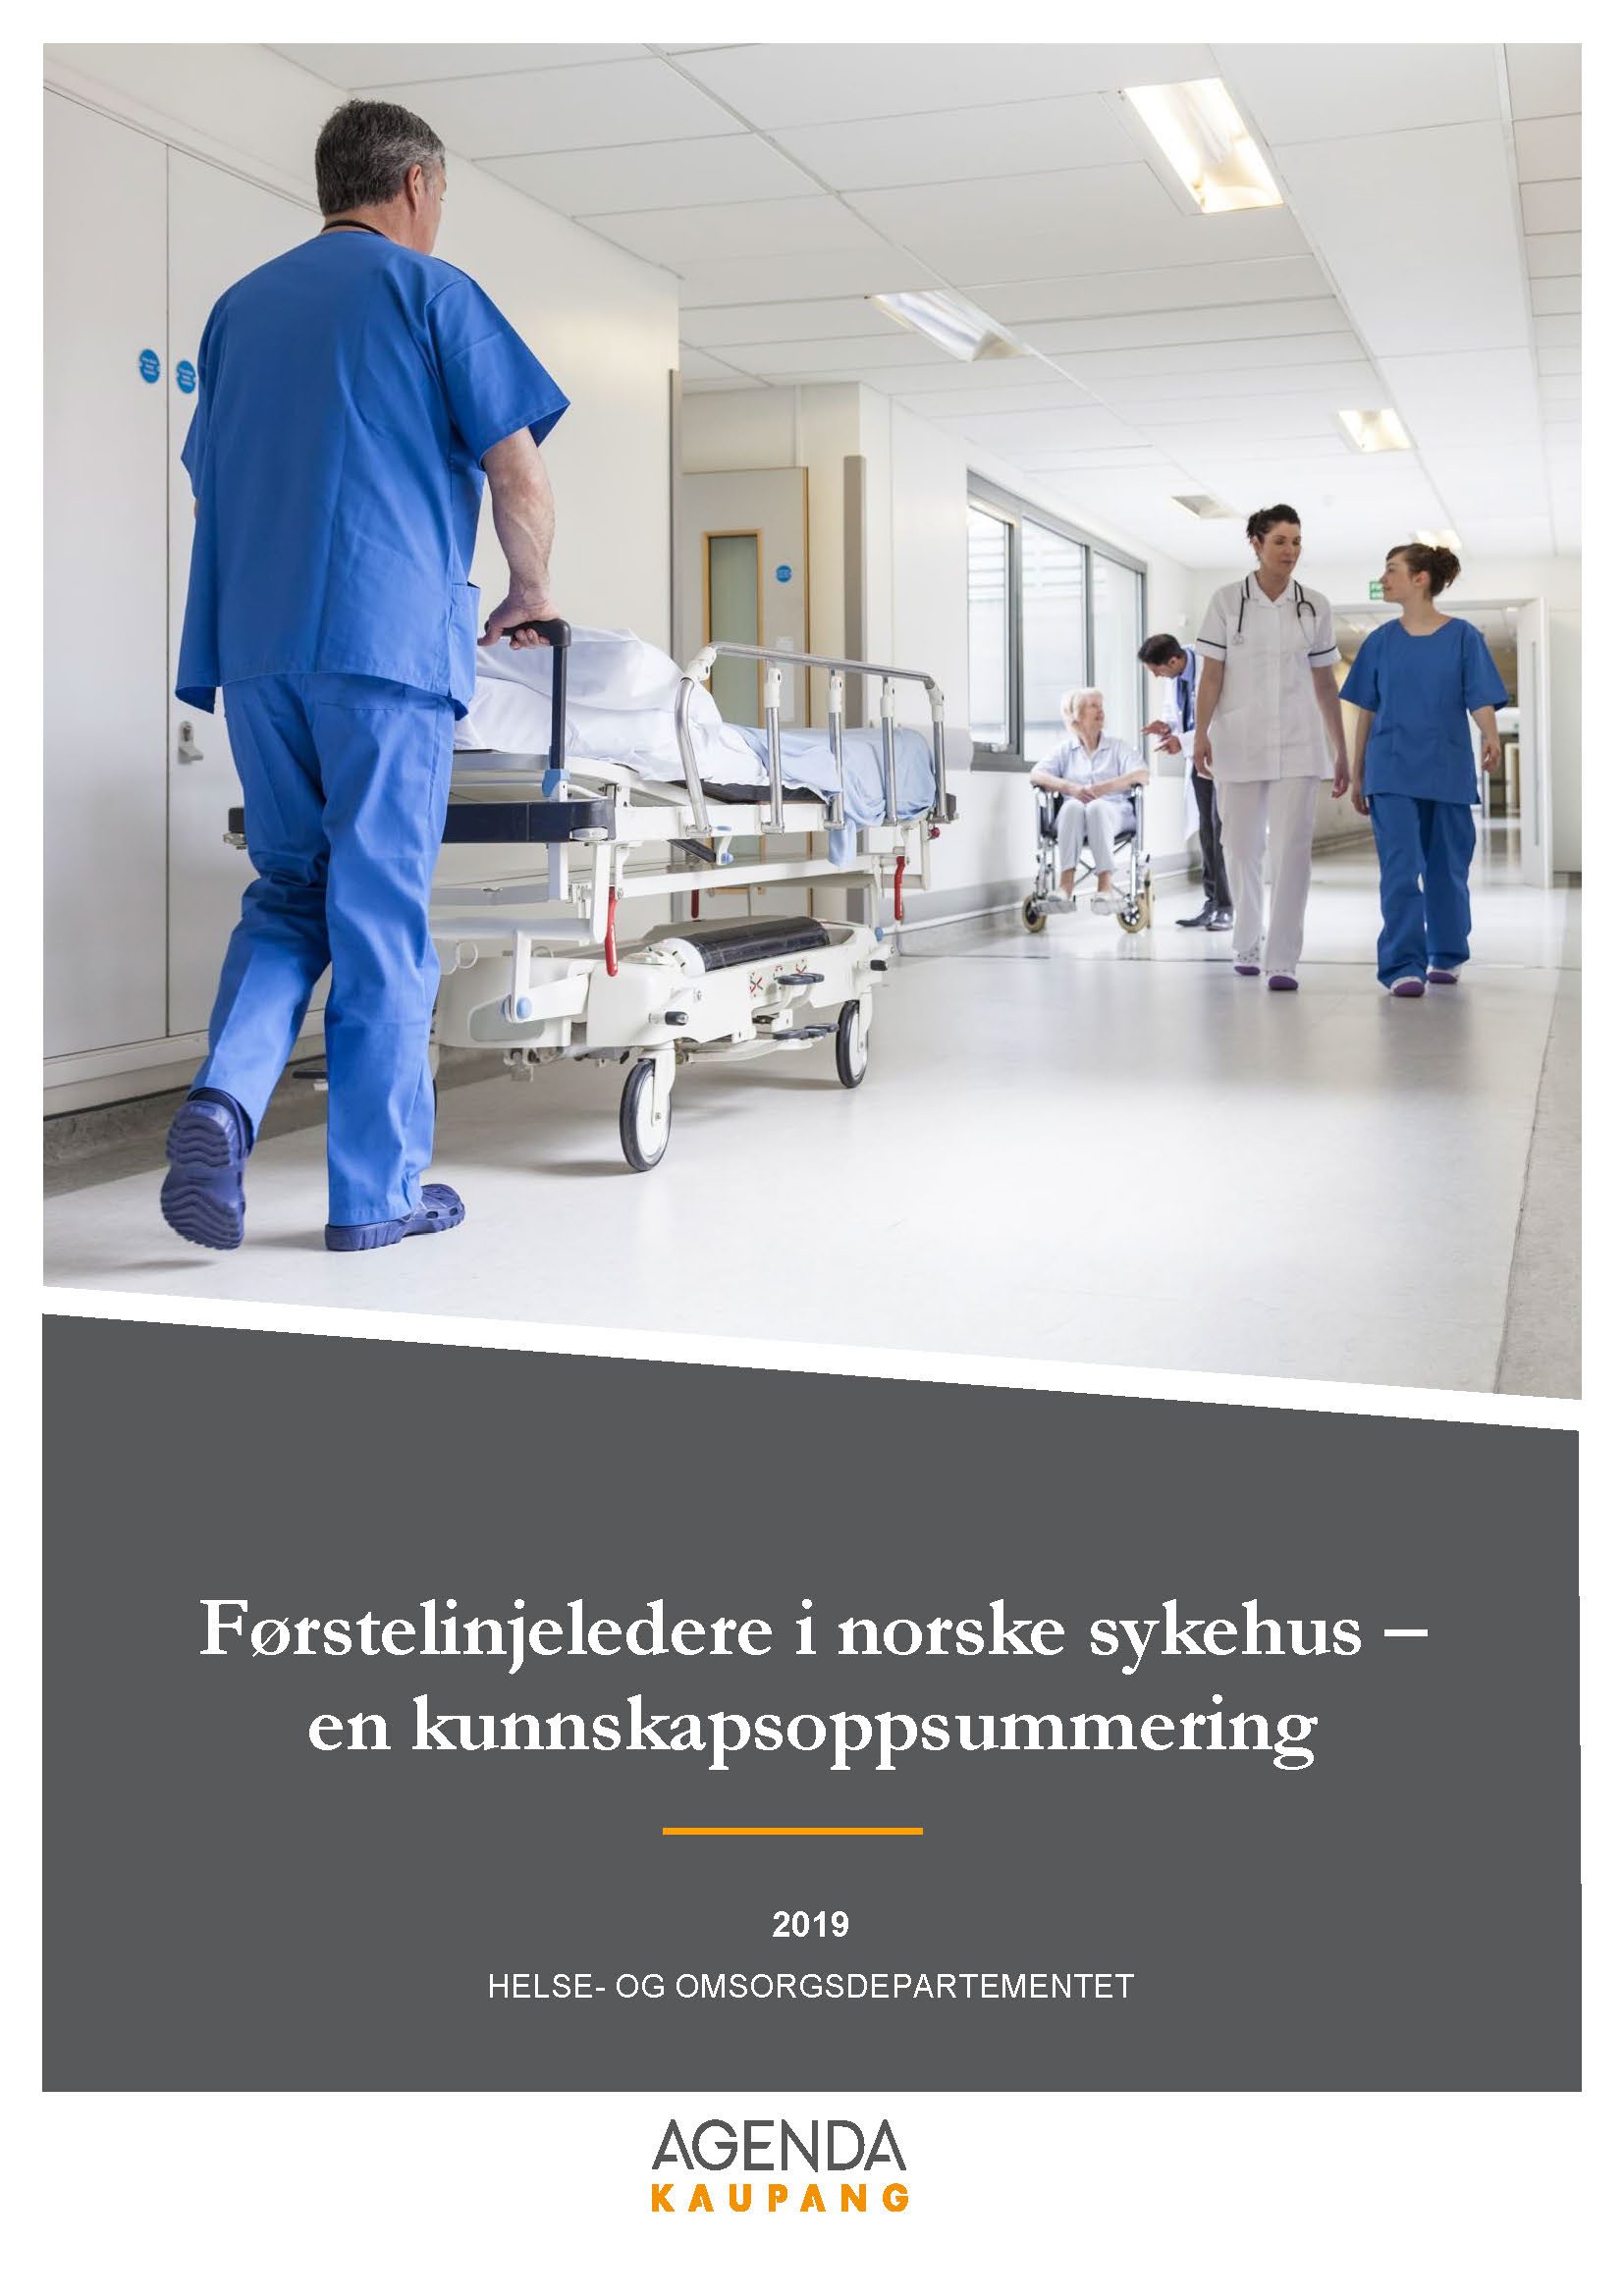 Førstelinjeledere i norske sykehus – en kunnskapsoppsummering